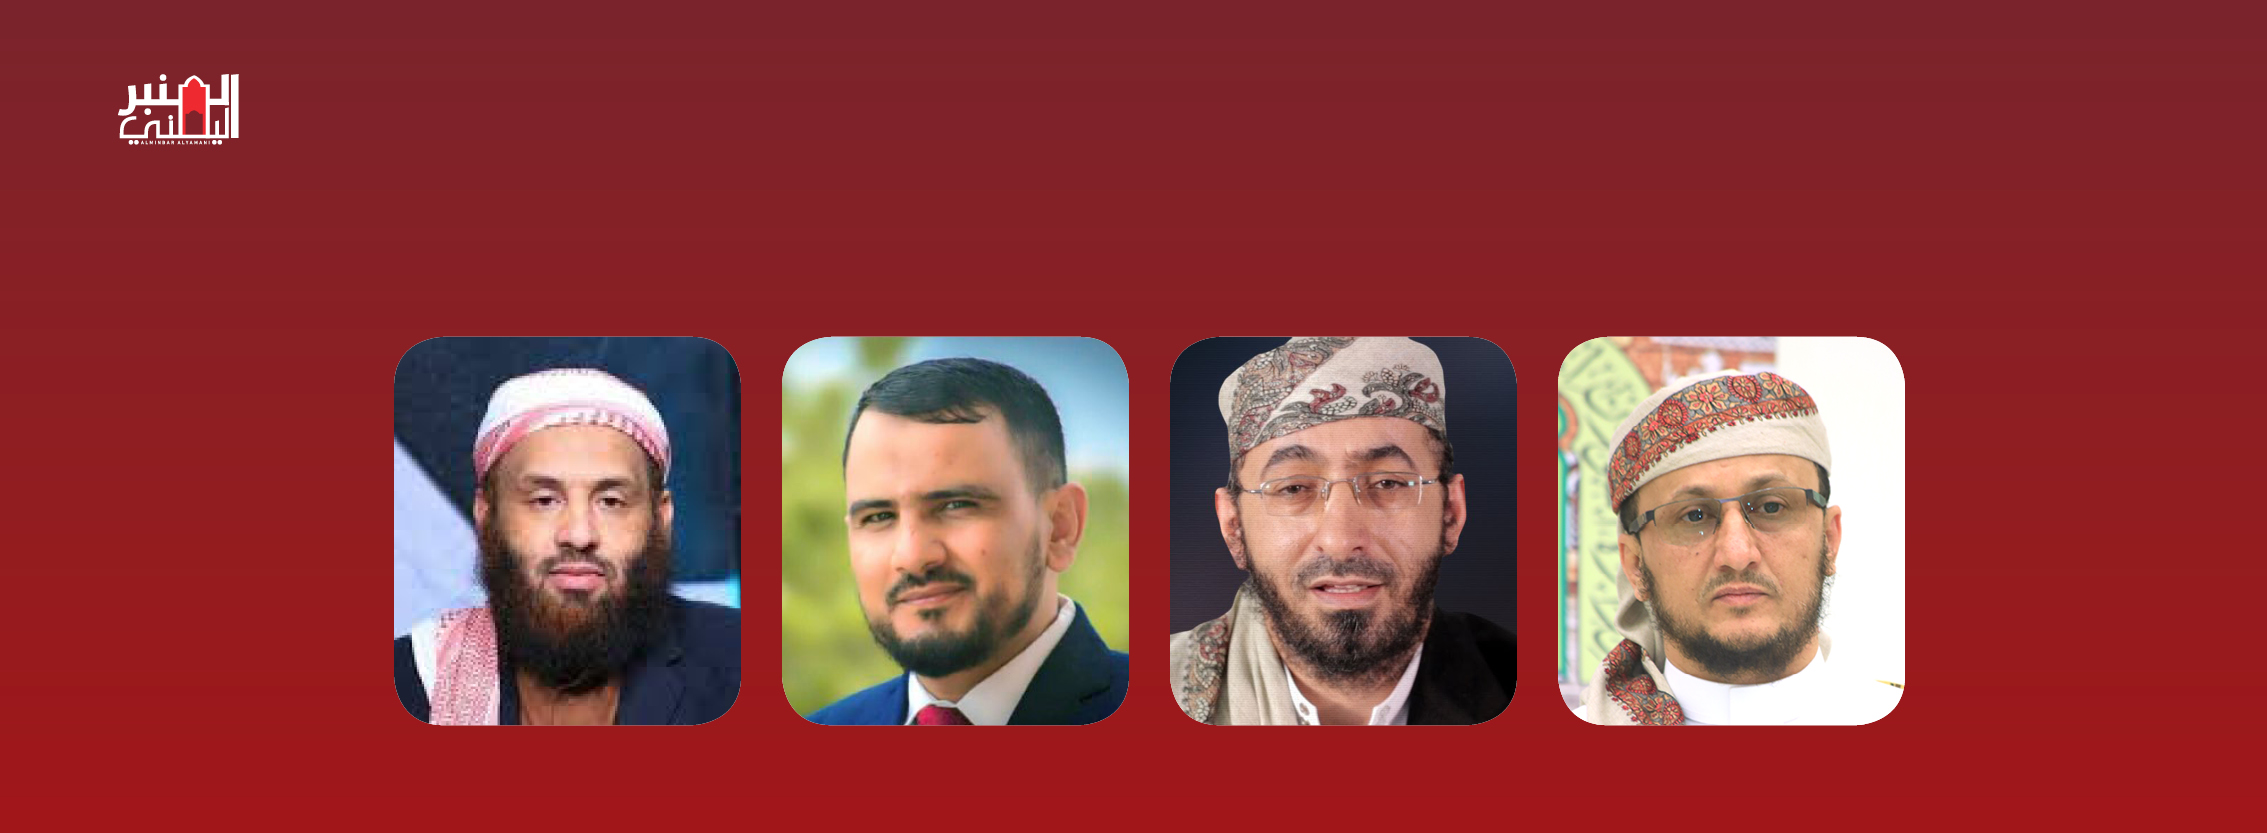 أكاديميو وعلماء اليمن يناقشون خطر الحوثية على الهوية اليمنية